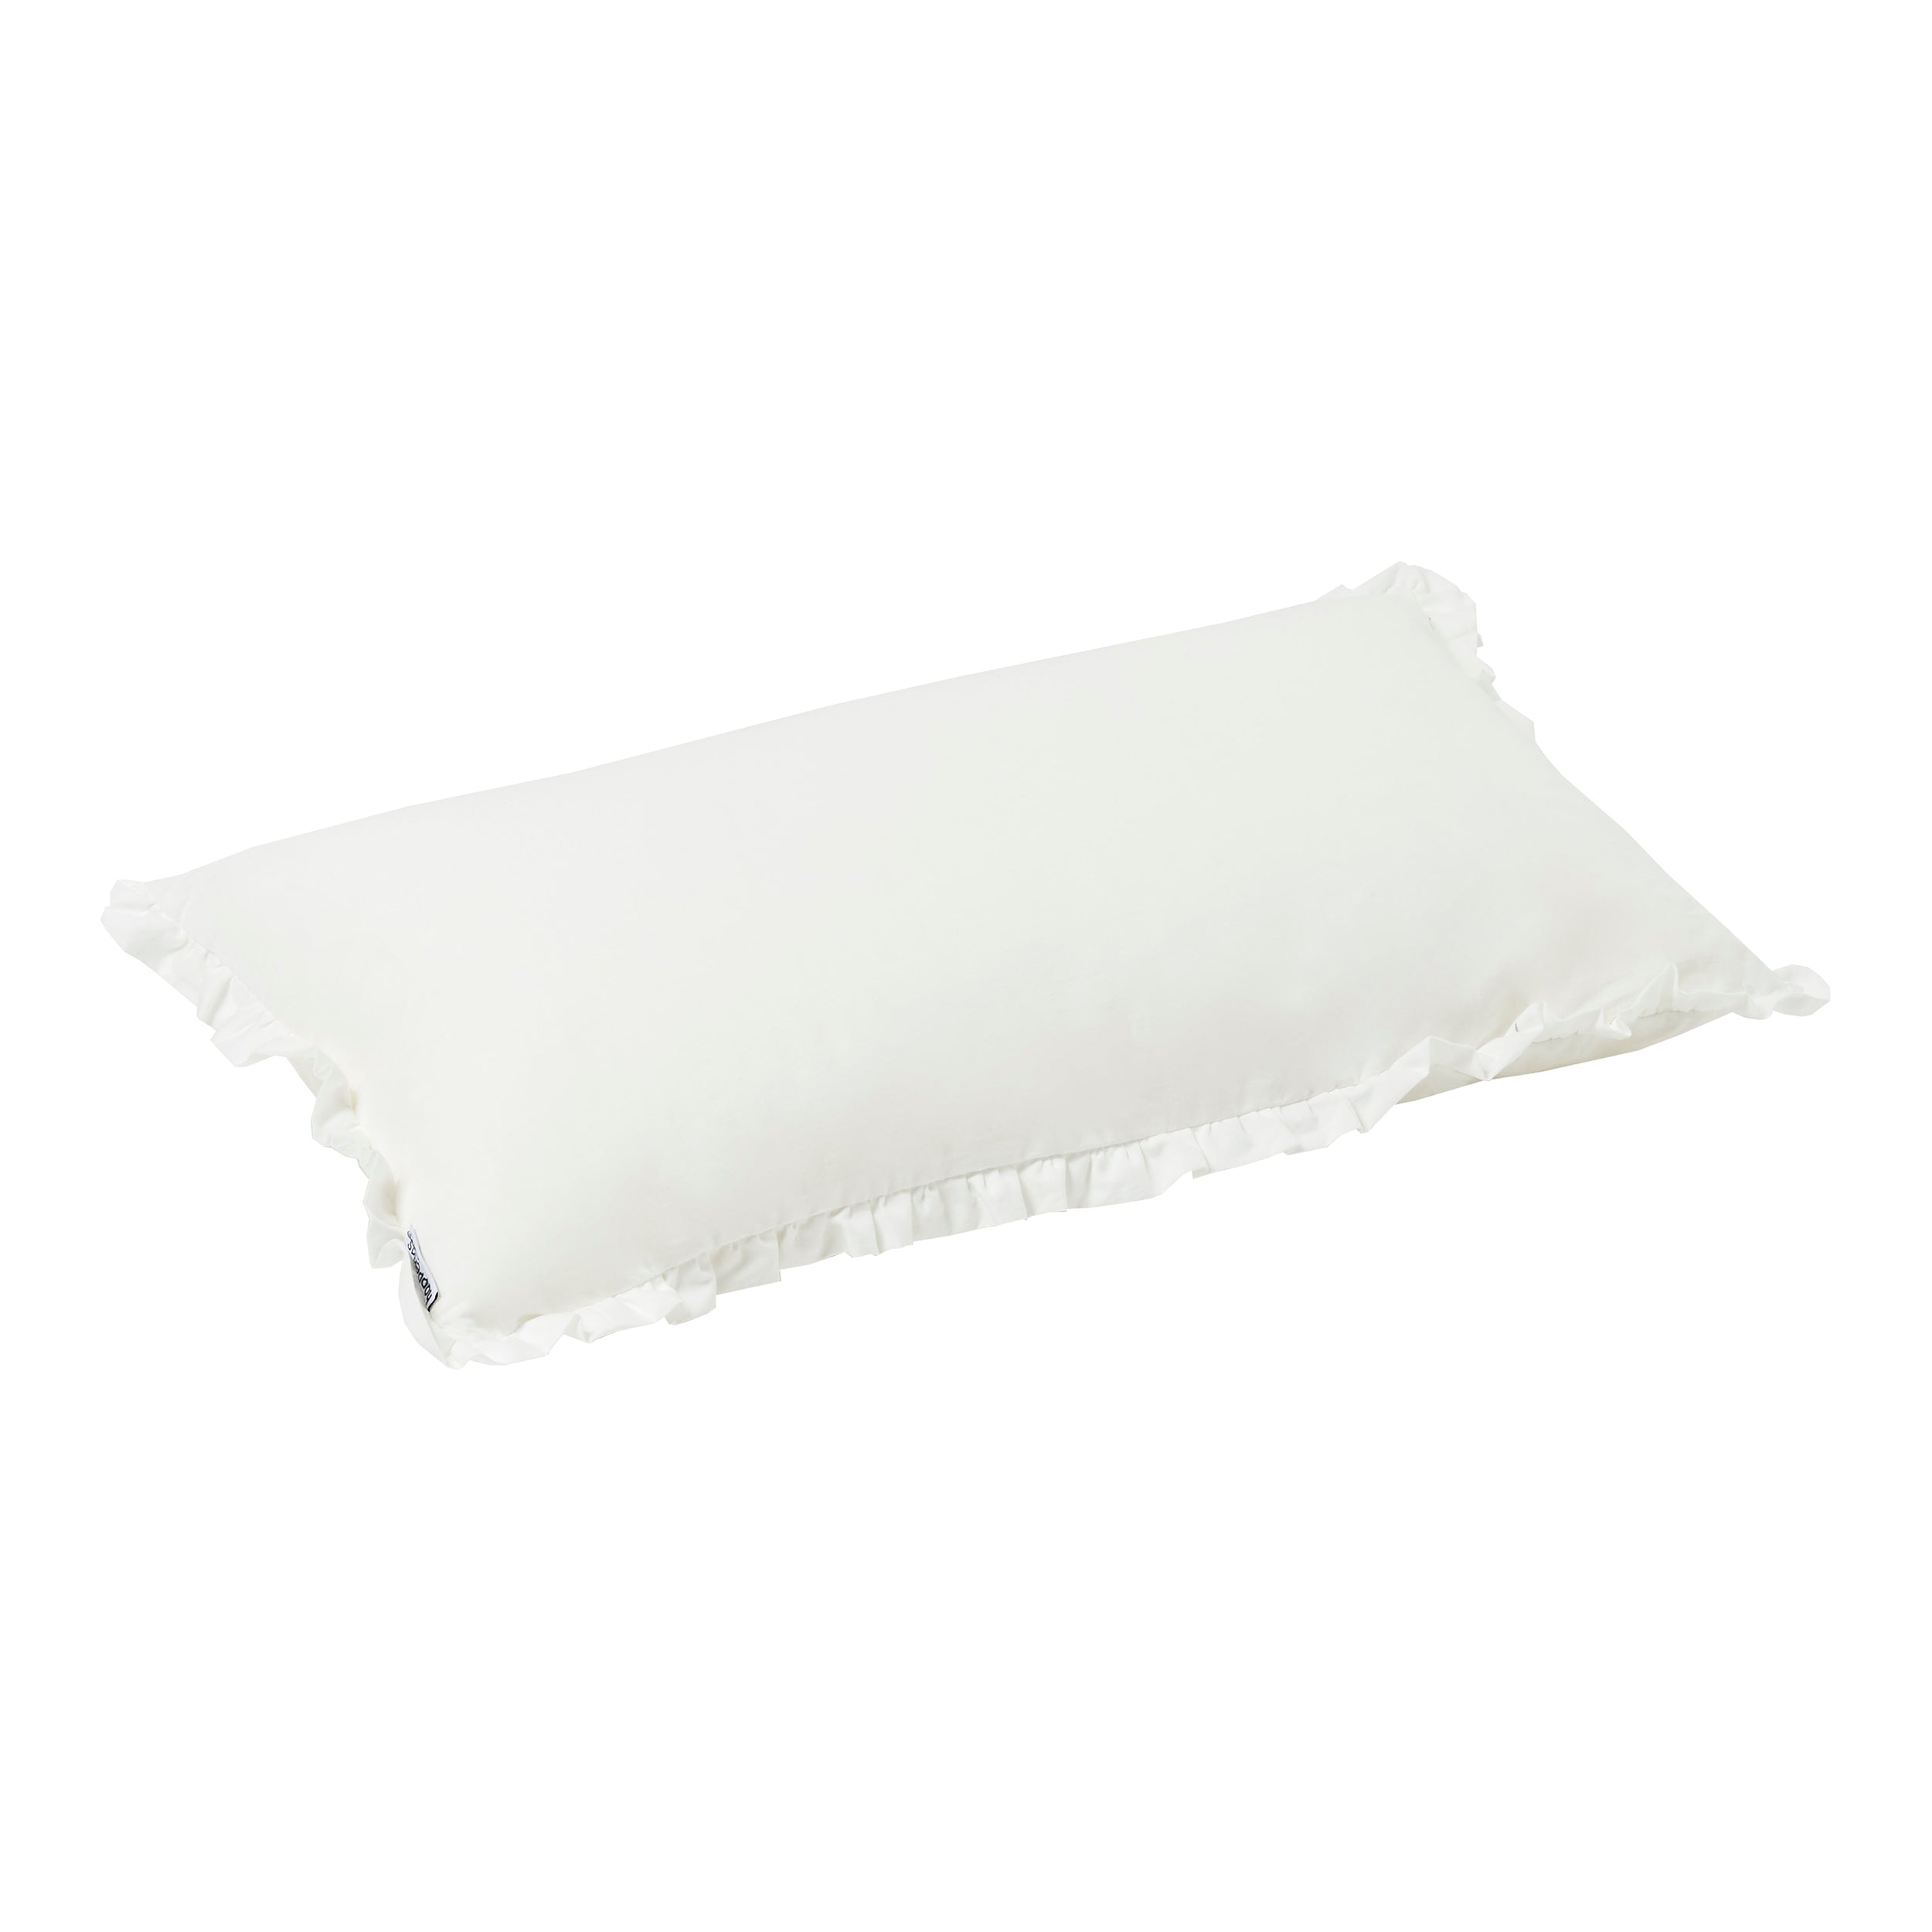 Hoppekids Winter Wonderland rectangular pillow with ruffles